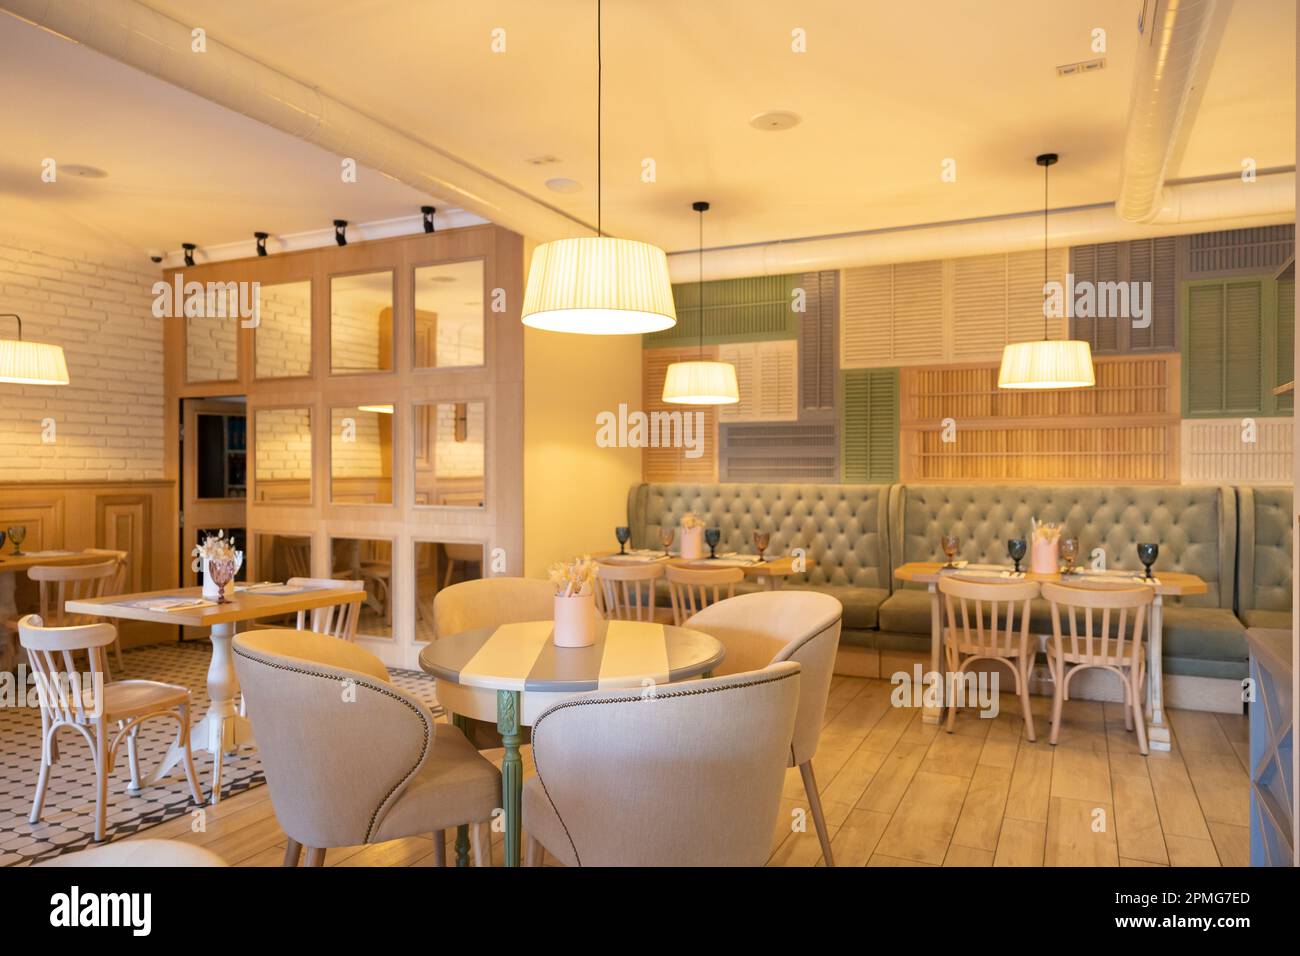 Intérieur élégant d'un restaurant confortable. Décoration intérieure moderne dans des couleurs claires Banque D'Images